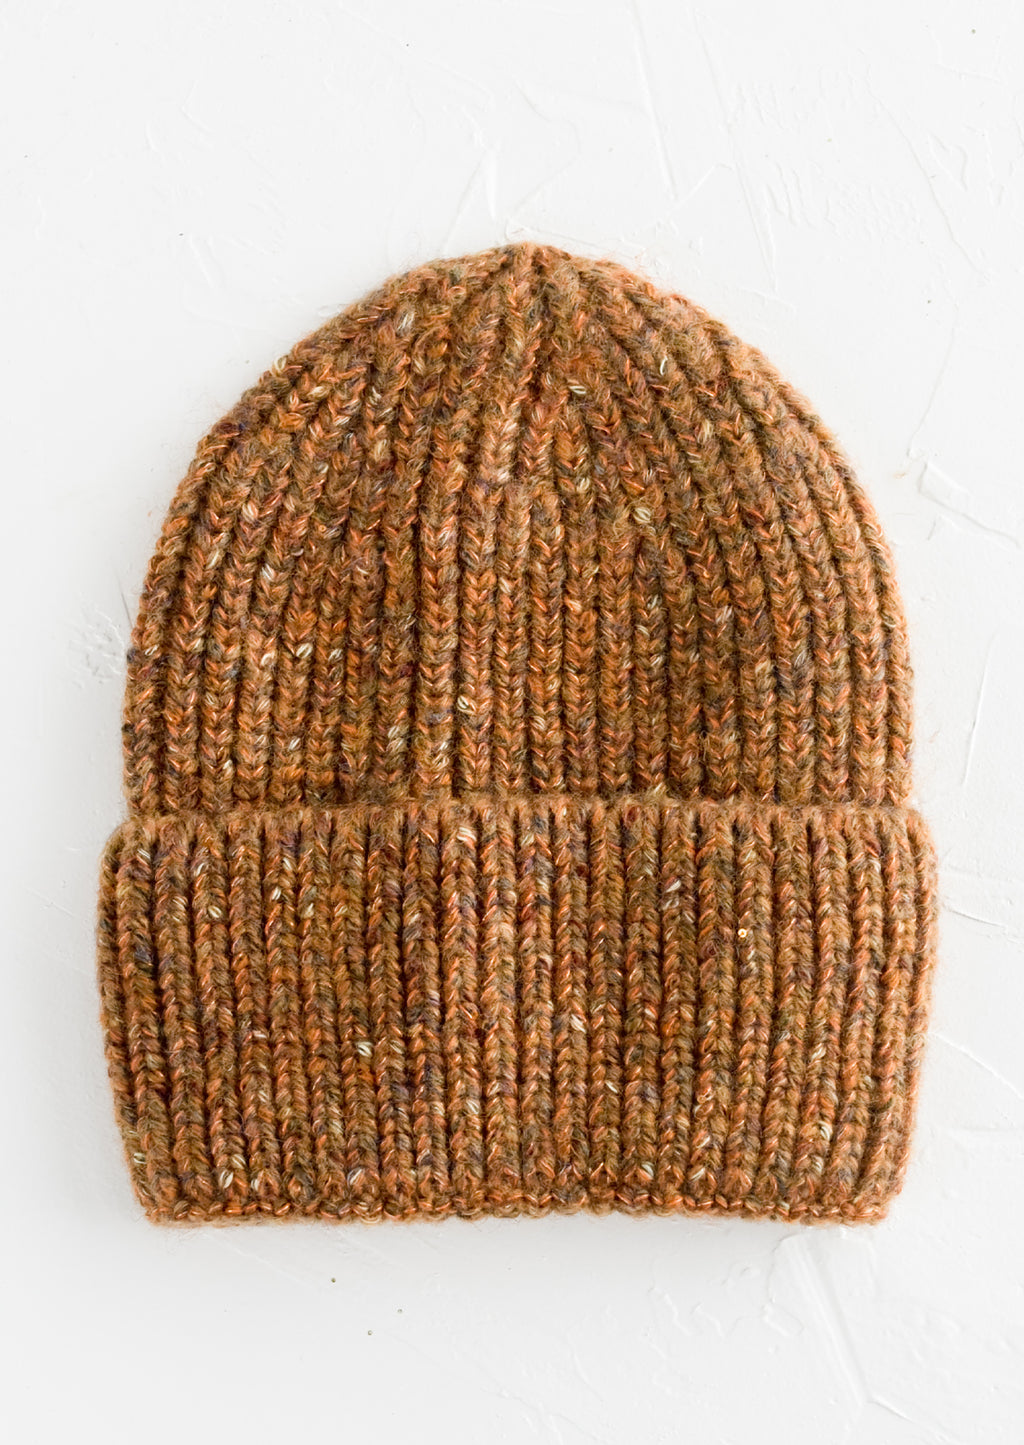 Auburn Multi: A knit beanie hat with cuffed rim made in auburn yarn with  speckles.